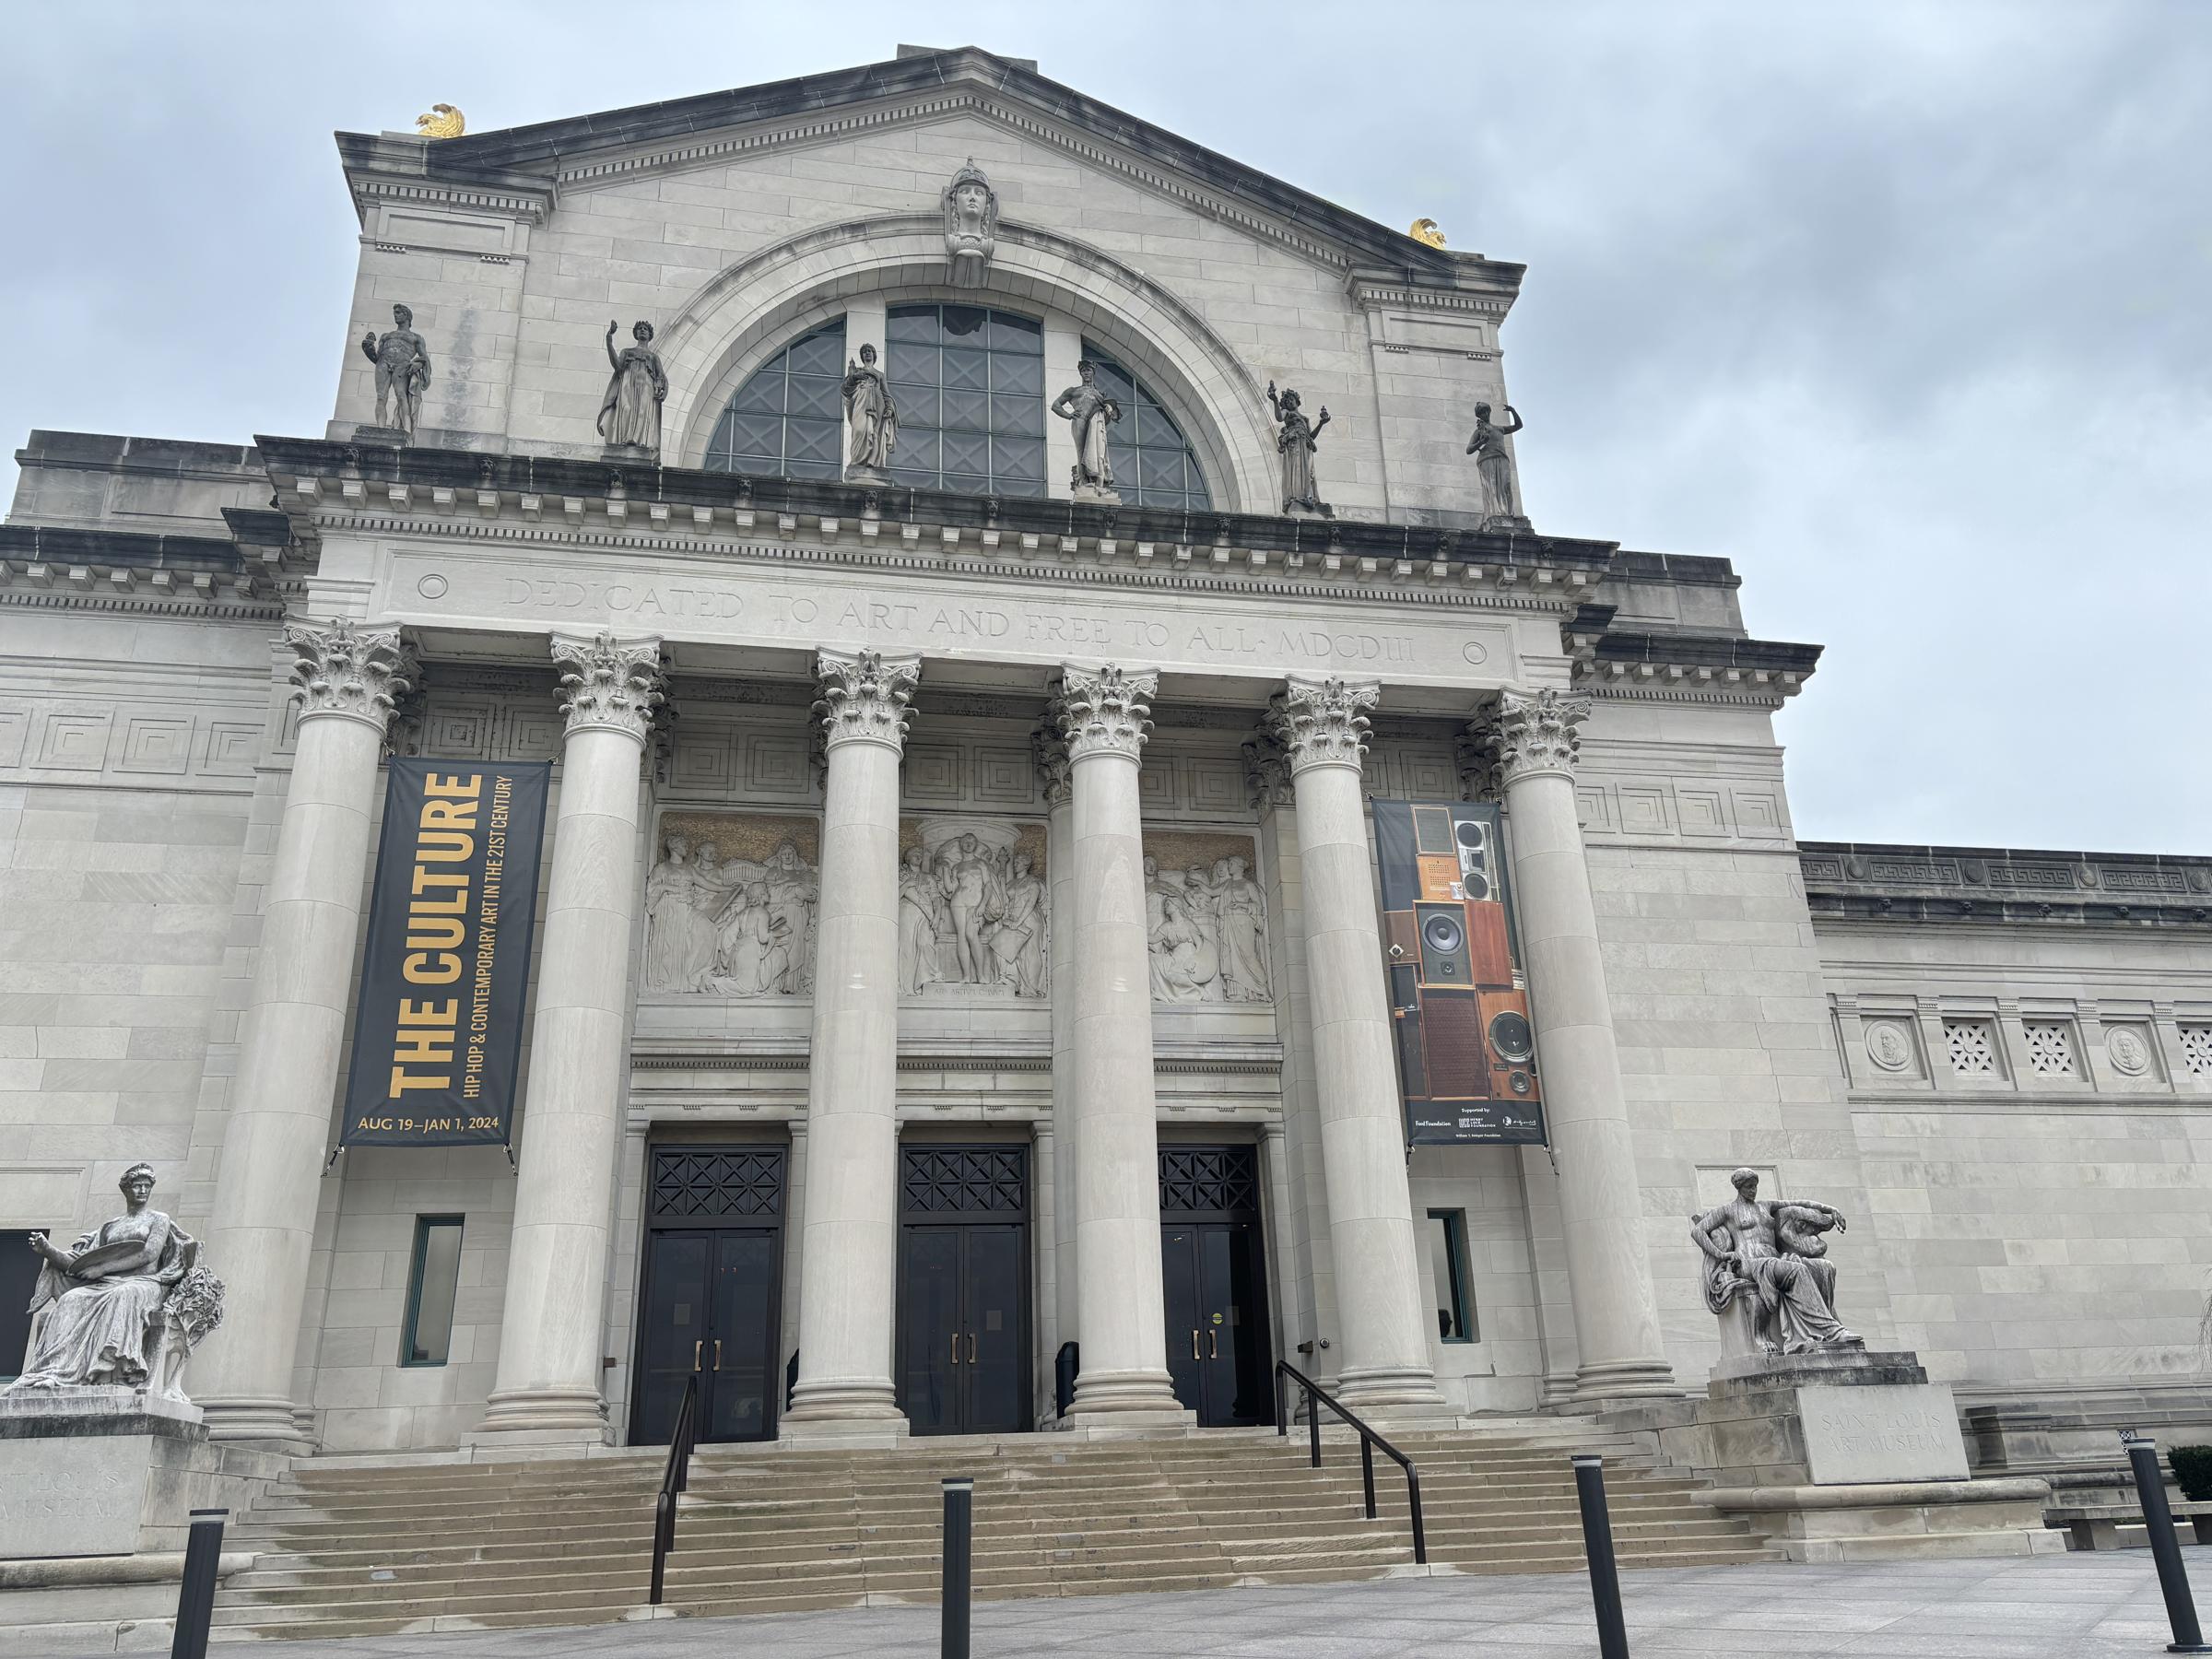 Saint Louis Art Museum front